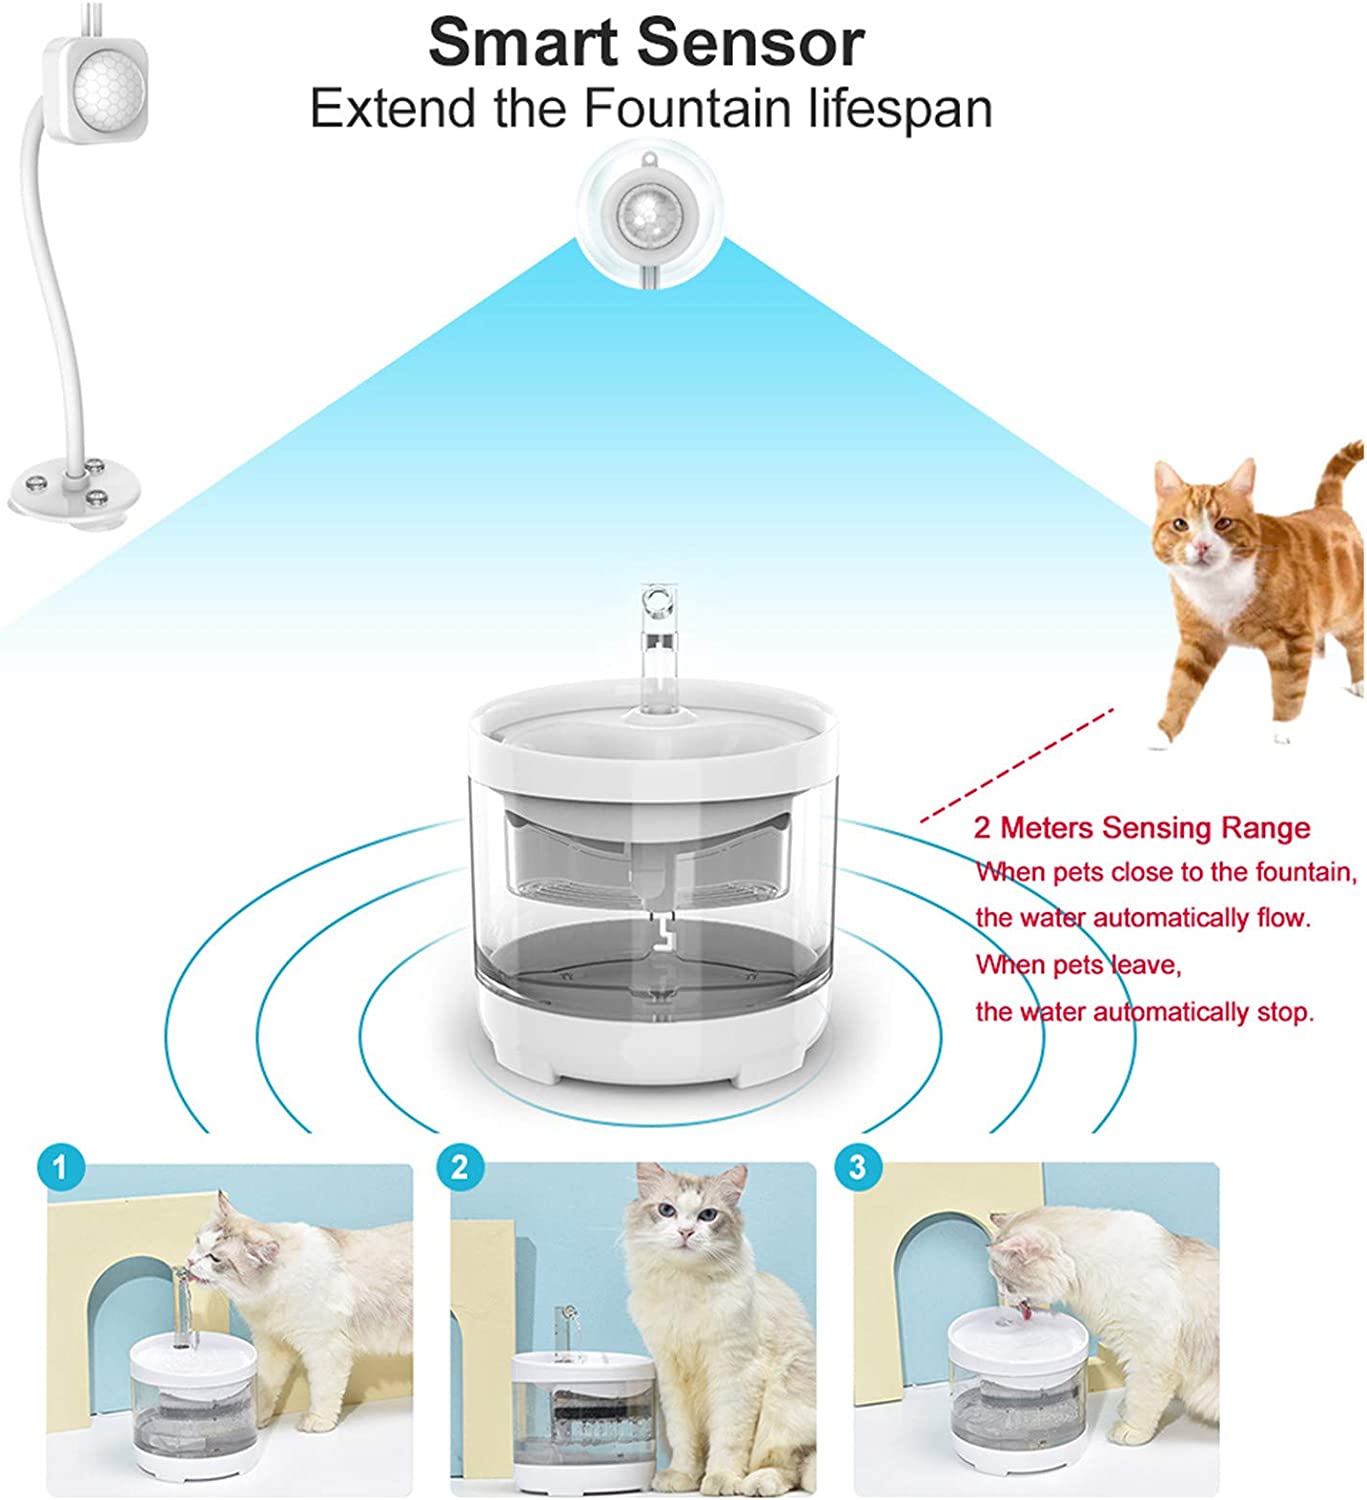 طراحی شکل گرد، که گربه های شما آسیب نخواهند دید. مخزن آب شفاف قابل مشاهده، به راحتی می توان فهمید که چه زمانی آب را تمیز و تعویض کنید. تا حیوان خانگی شما همیشه آب تمیز و سالم بنوشد. ساختار جزء، آسان برای نصب، آسان برای تمیز کردن.